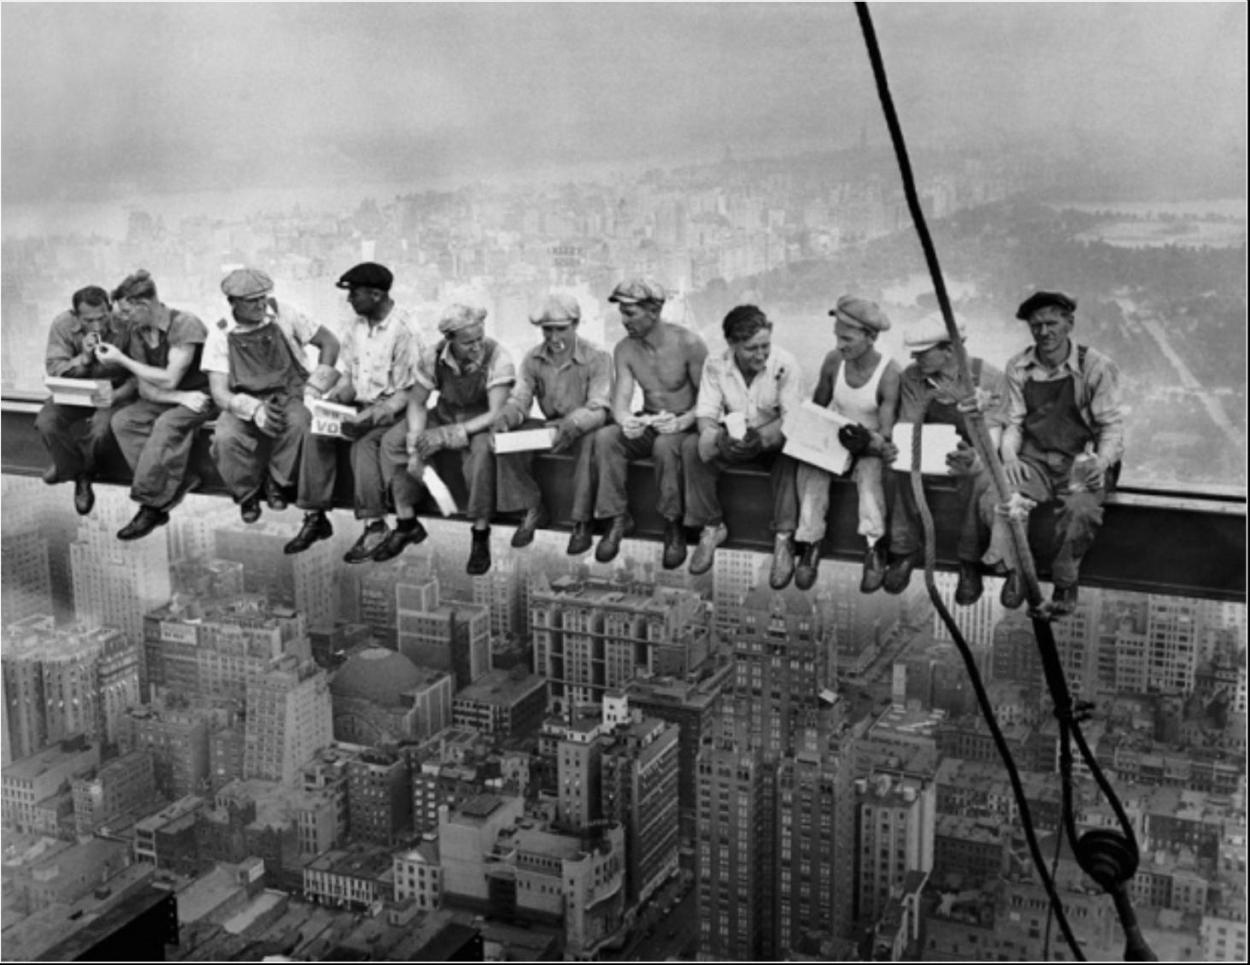 Almuerzo en lo más alto del rascacielos - CHARLES CLYDE EBBETS - 1932